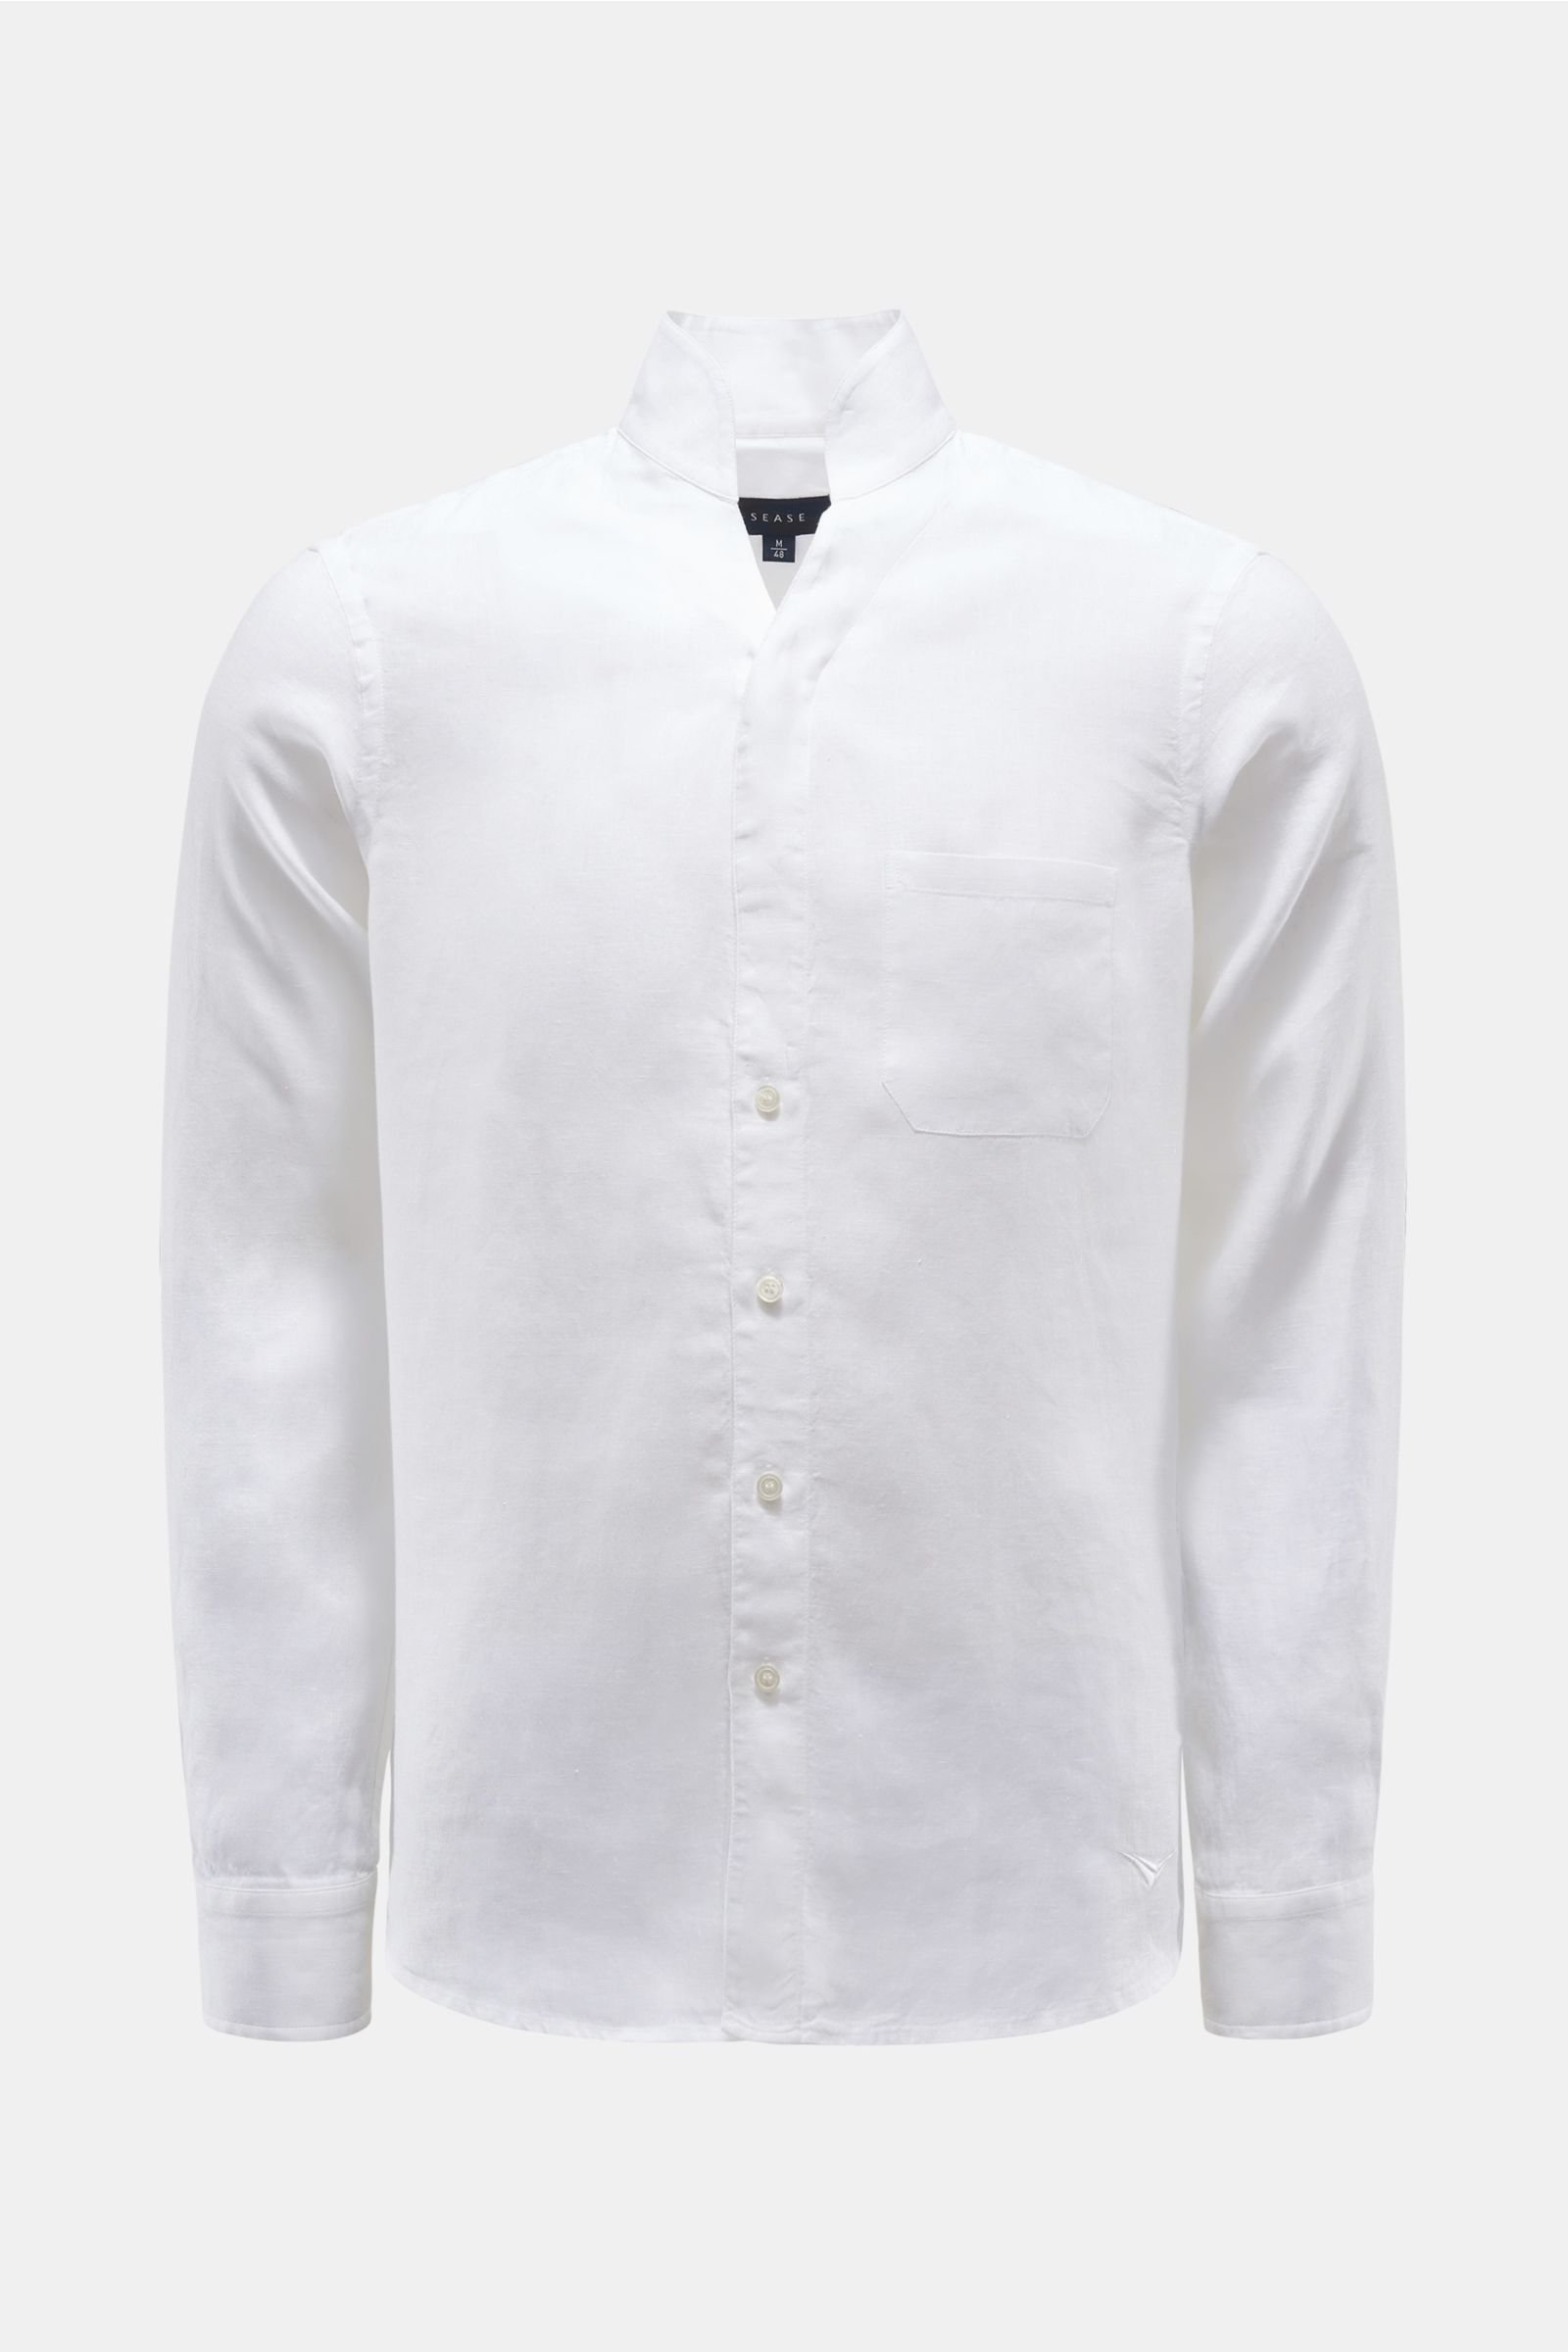 Linen shirt 'Ellen' standing collar white